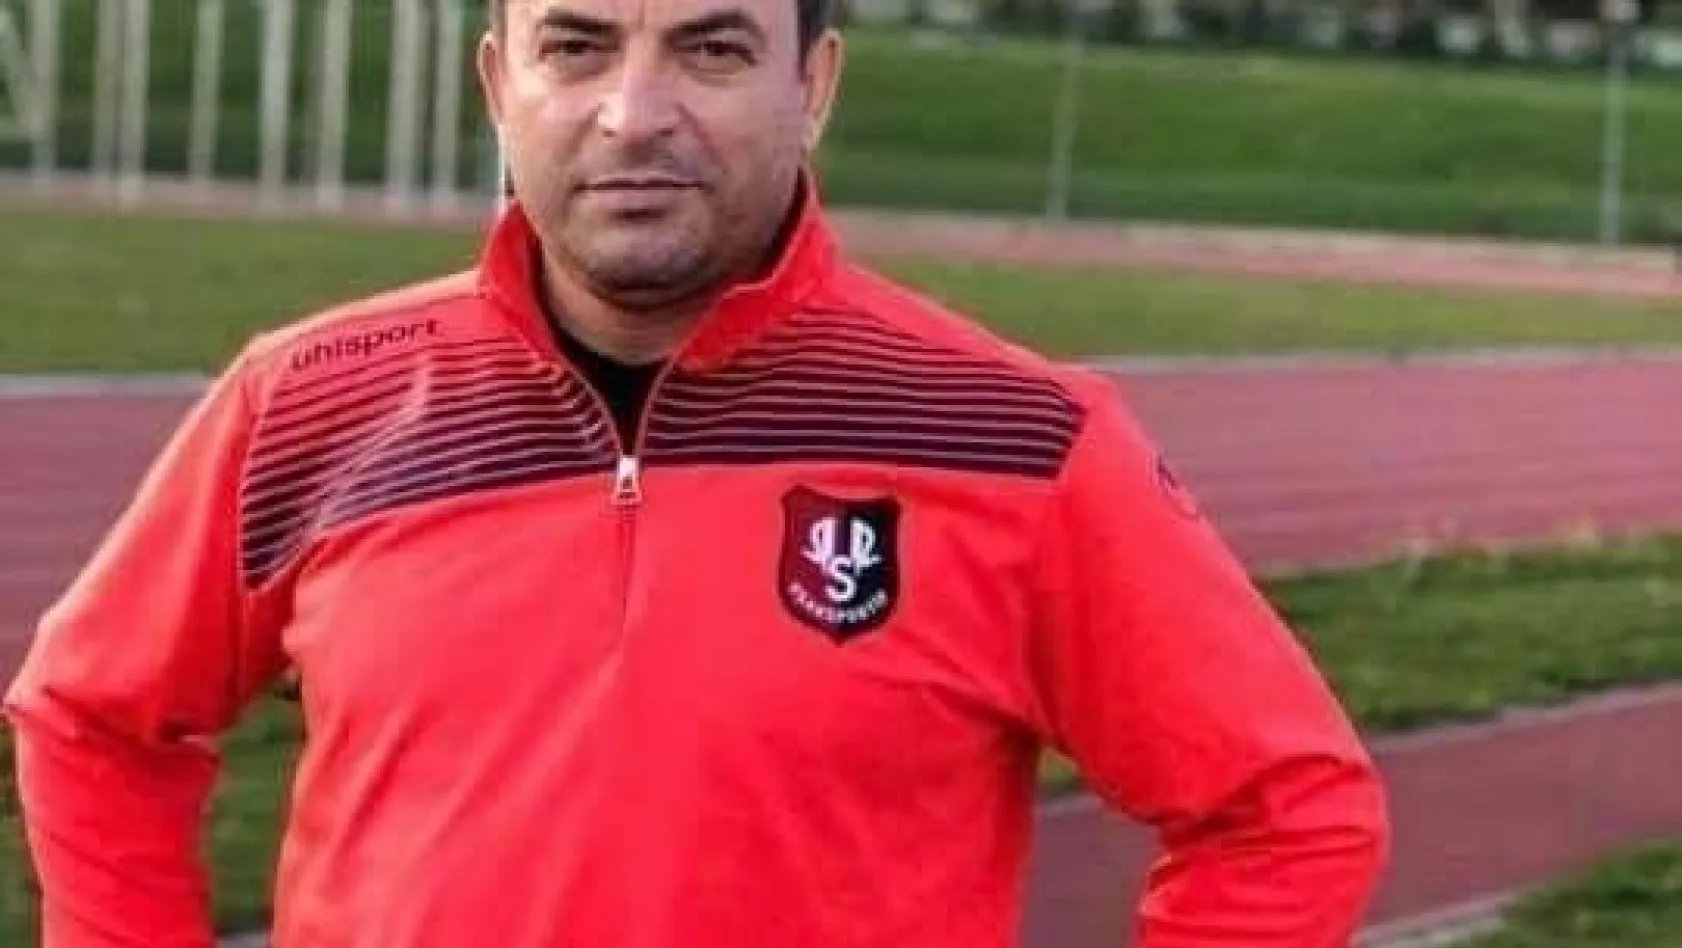 Atletizm Milli Takımı antrenörlerinden İbrahim Tunç, hayatını kaybetti
